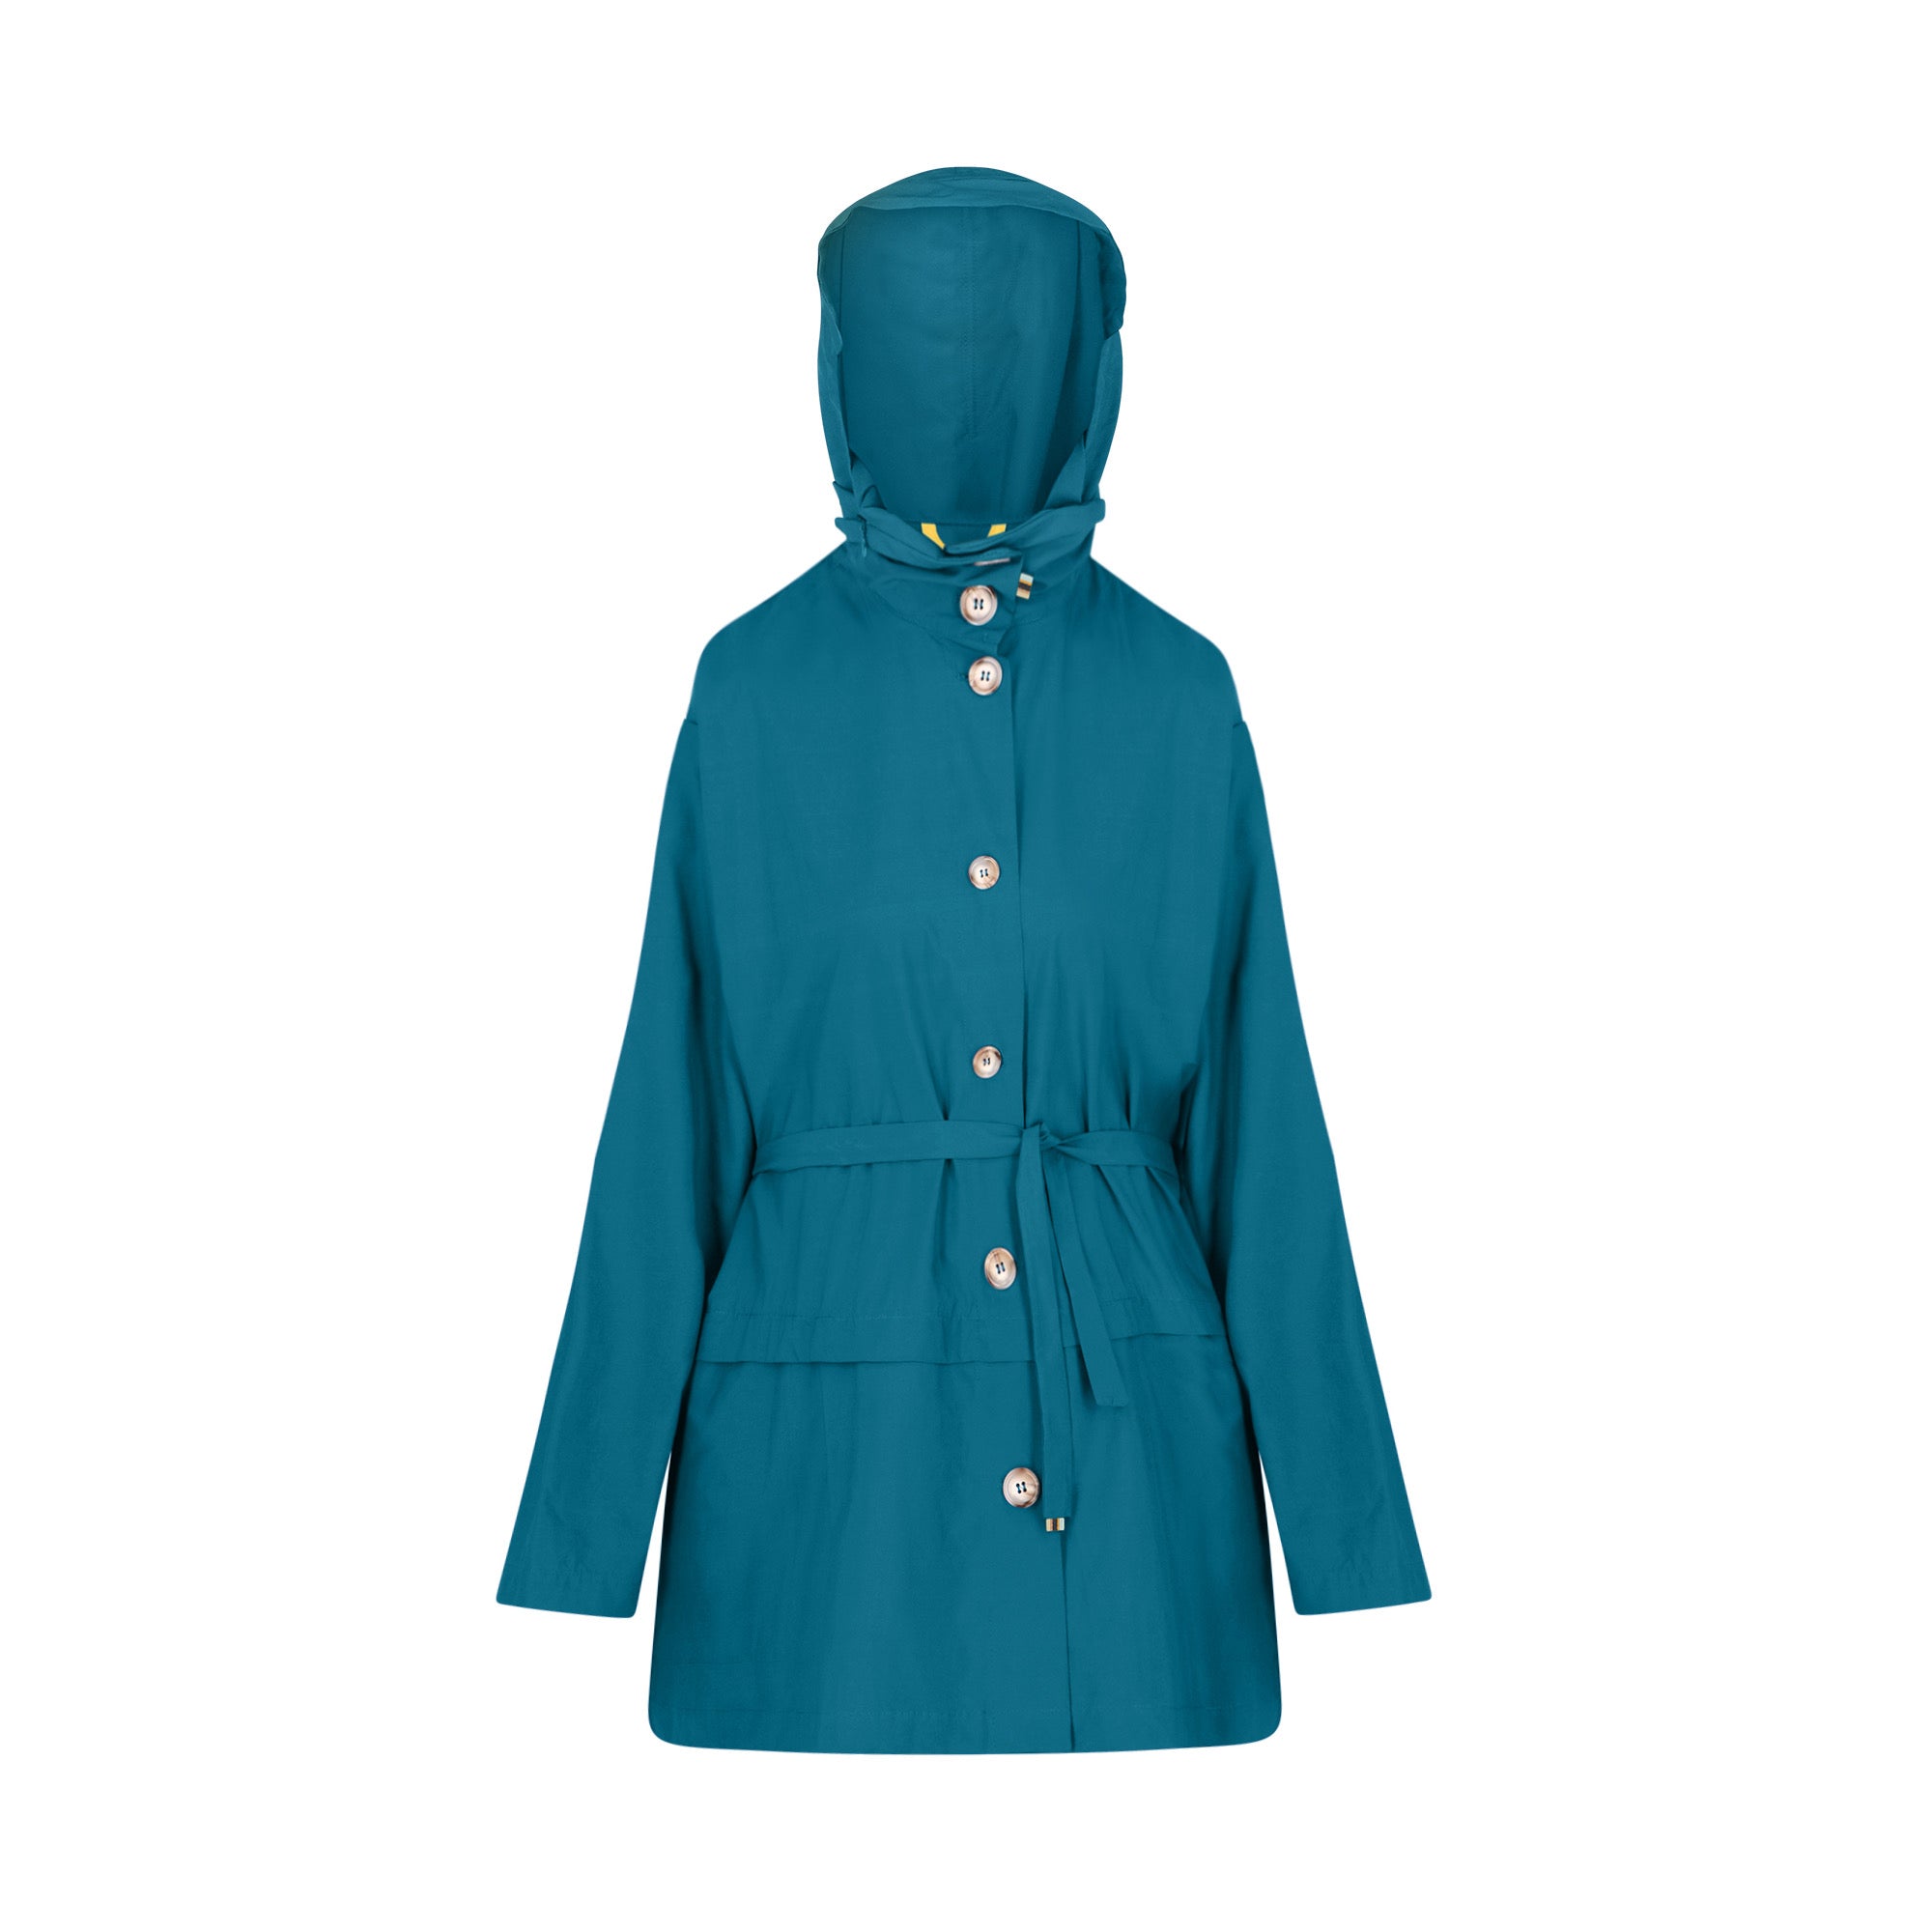 Bise raincoat - Ocean Blue color - front view